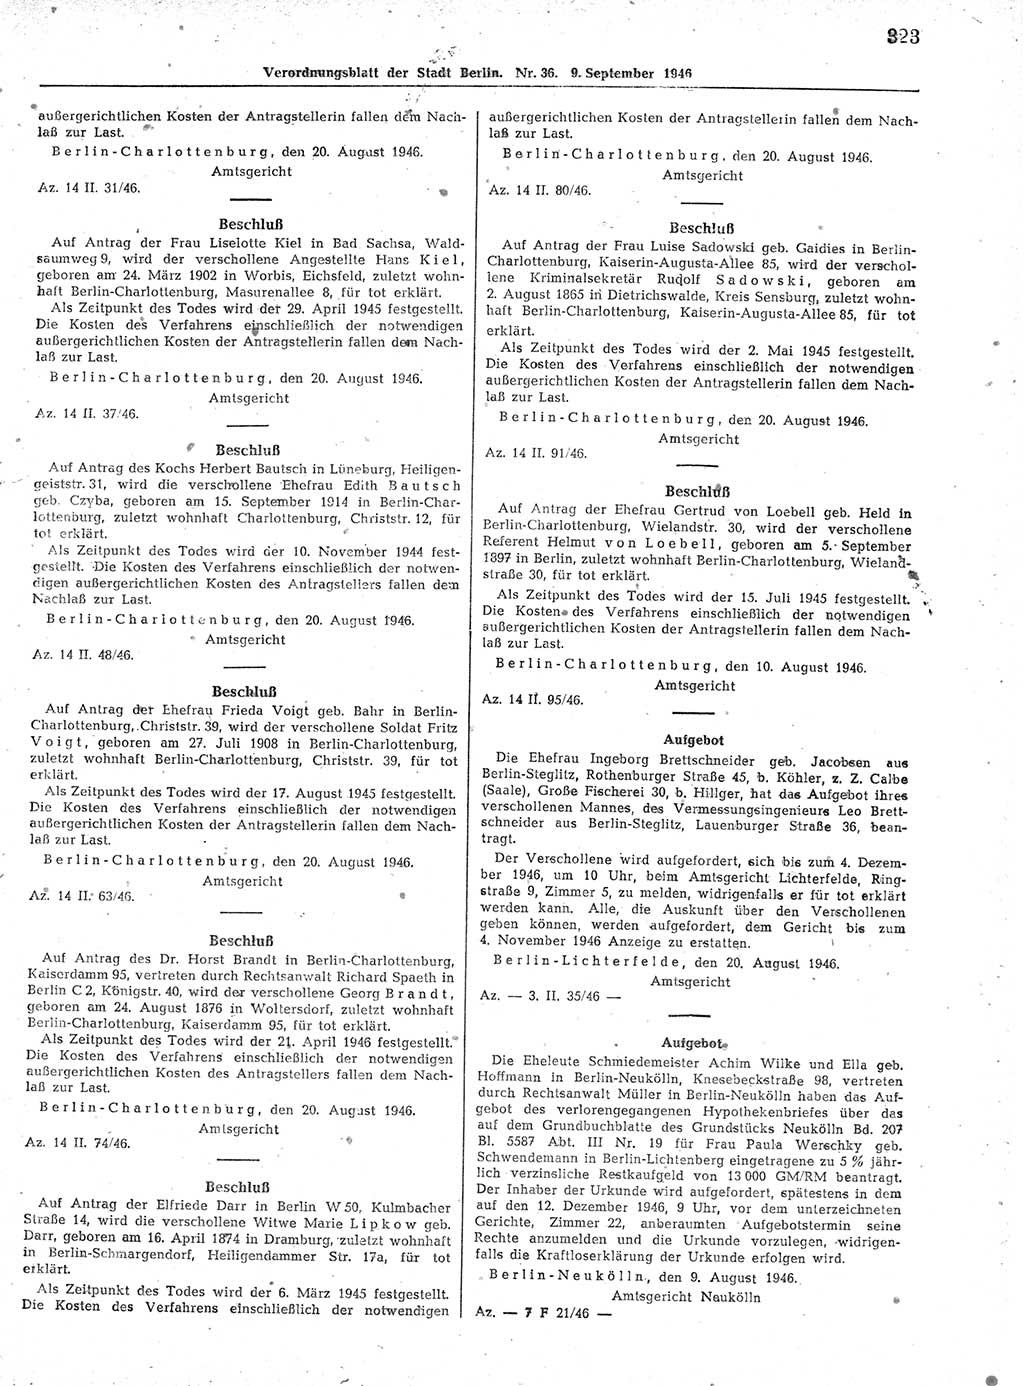 Verordnungsblatt (VOBl.) der Stadt Berlin, für Groß-Berlin 1946, Seite 323 (VOBl. Bln. 1946, S. 323)